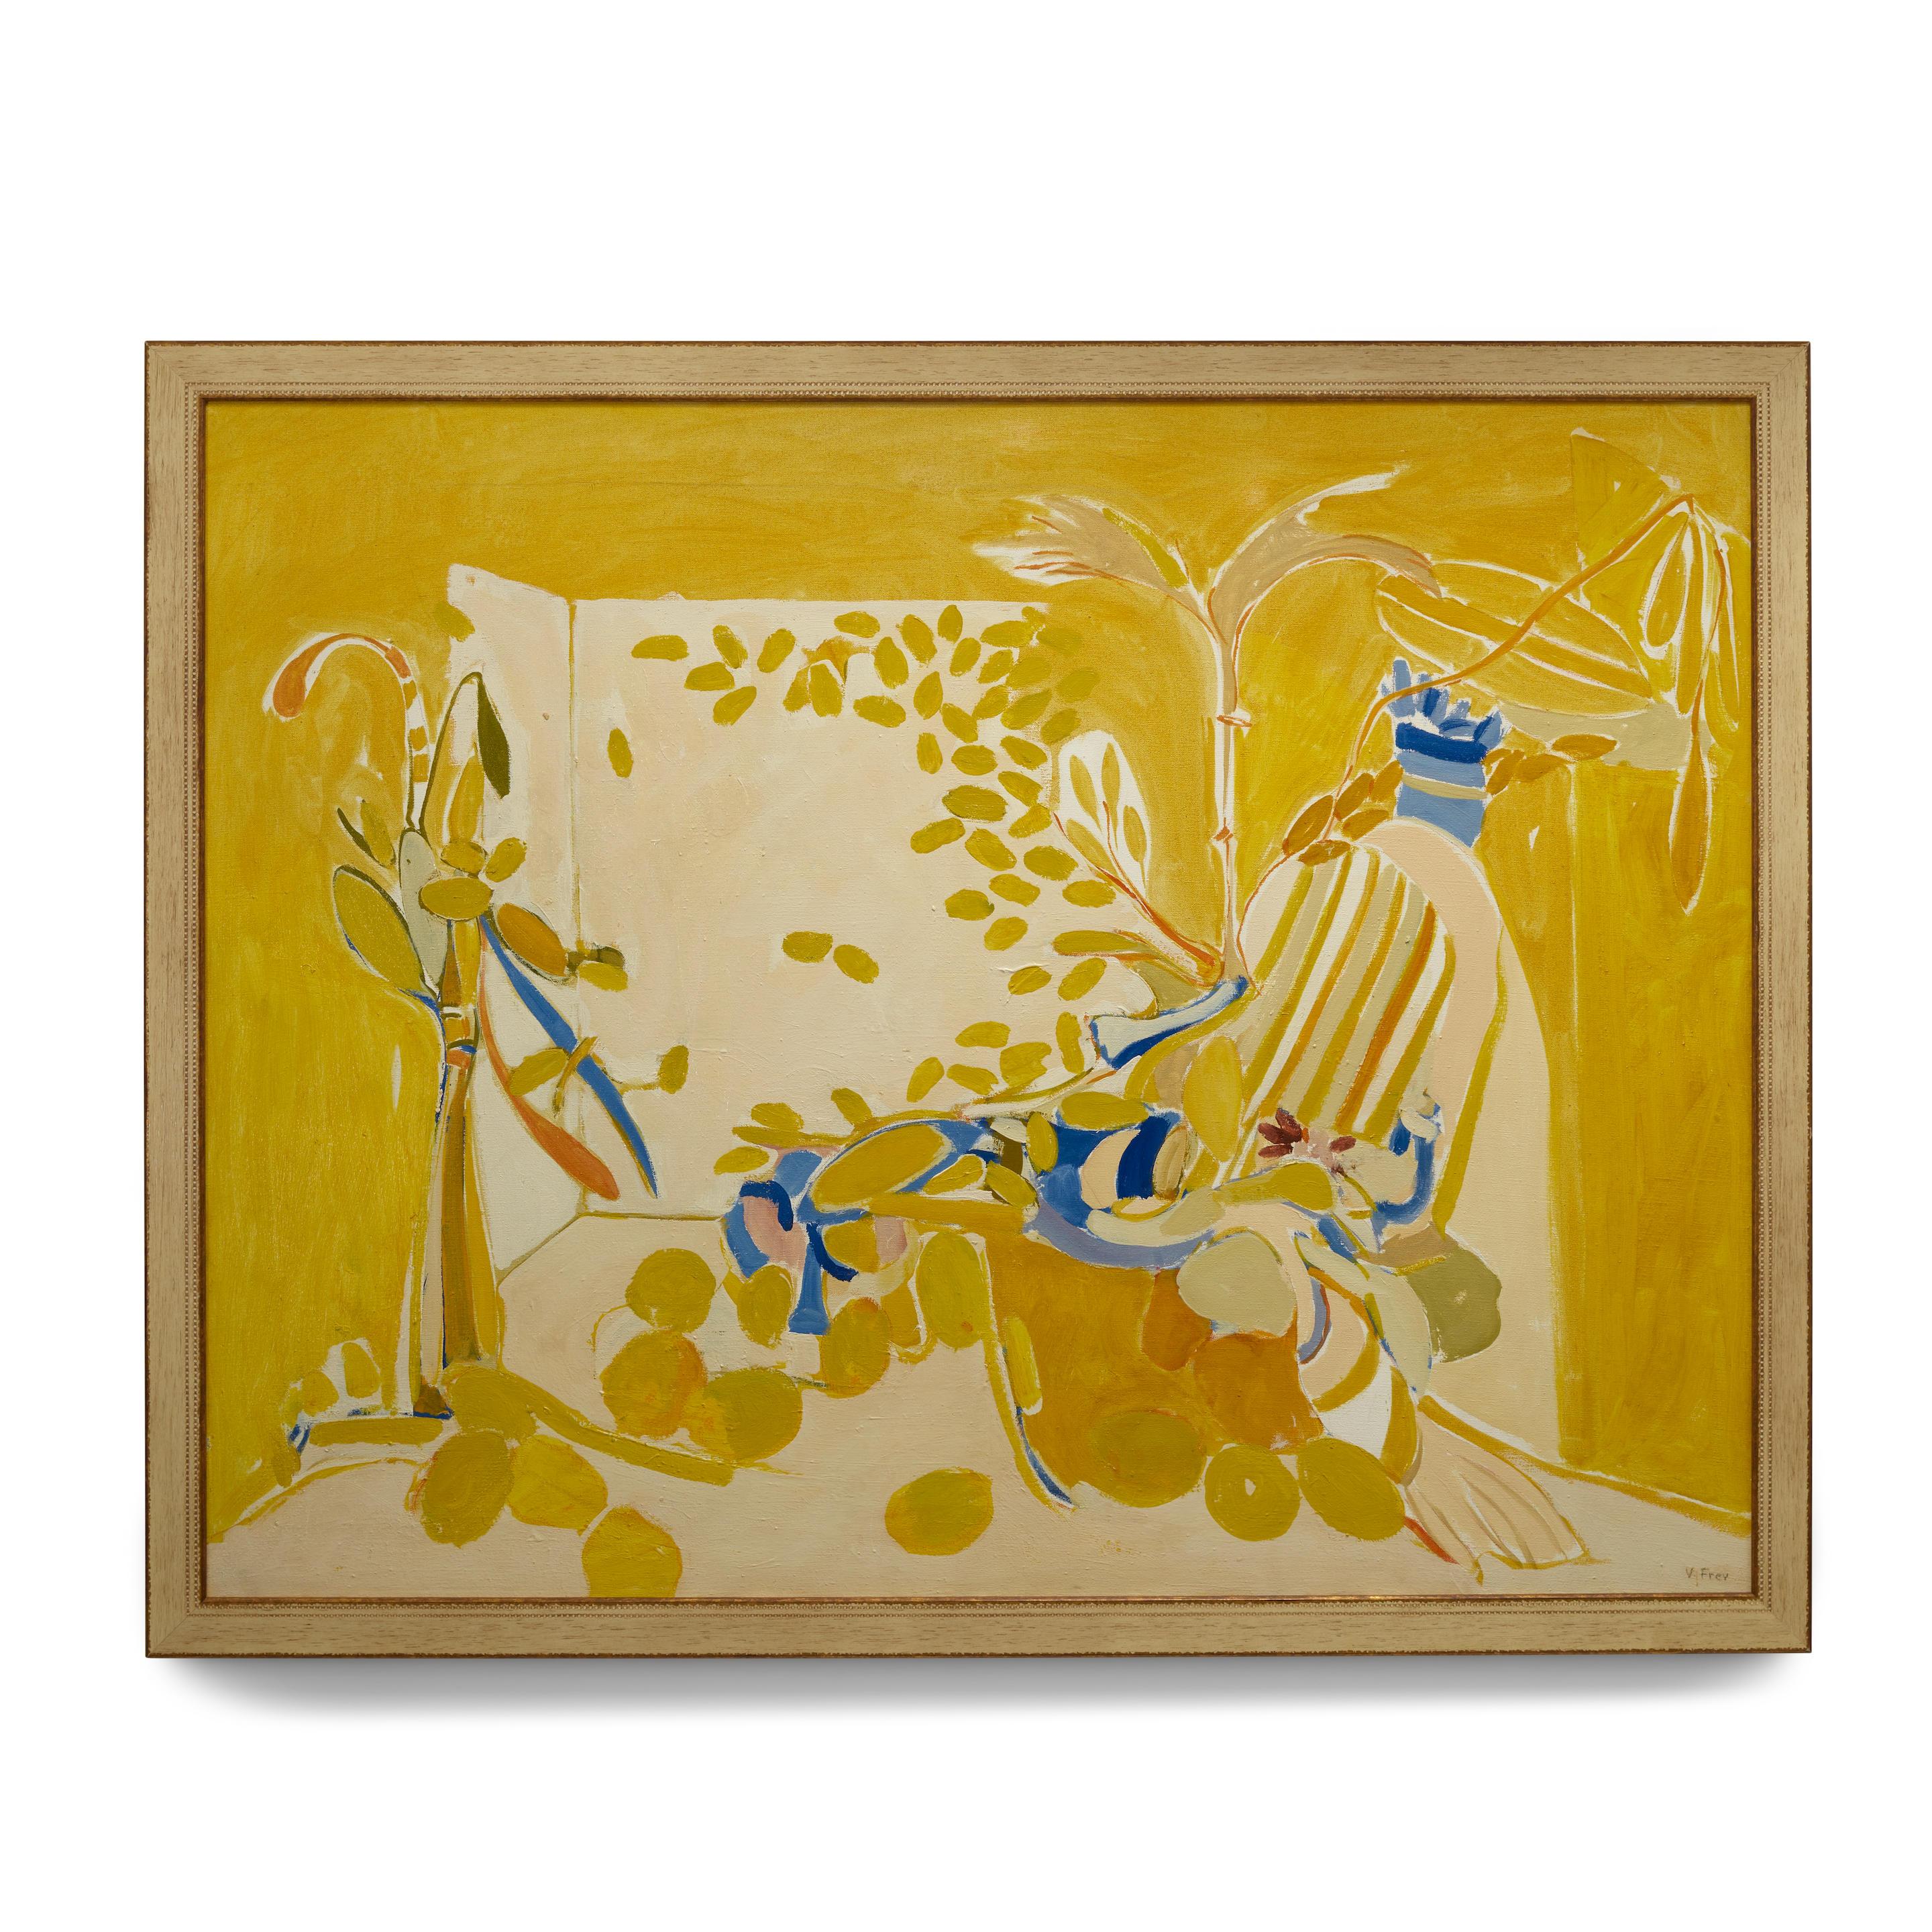 VIOLA FREY (1933-2004)
Rare nature morte jaune
1966
huile sur toile, signée "V.I.I." en bas à droite. Frey" en bas à droite
34 x 44in (86.3 x 111.8cm)
Provenance - The Nevica Project, Chicago
Cette œuvre est enregistrée auprès de la Fondation du